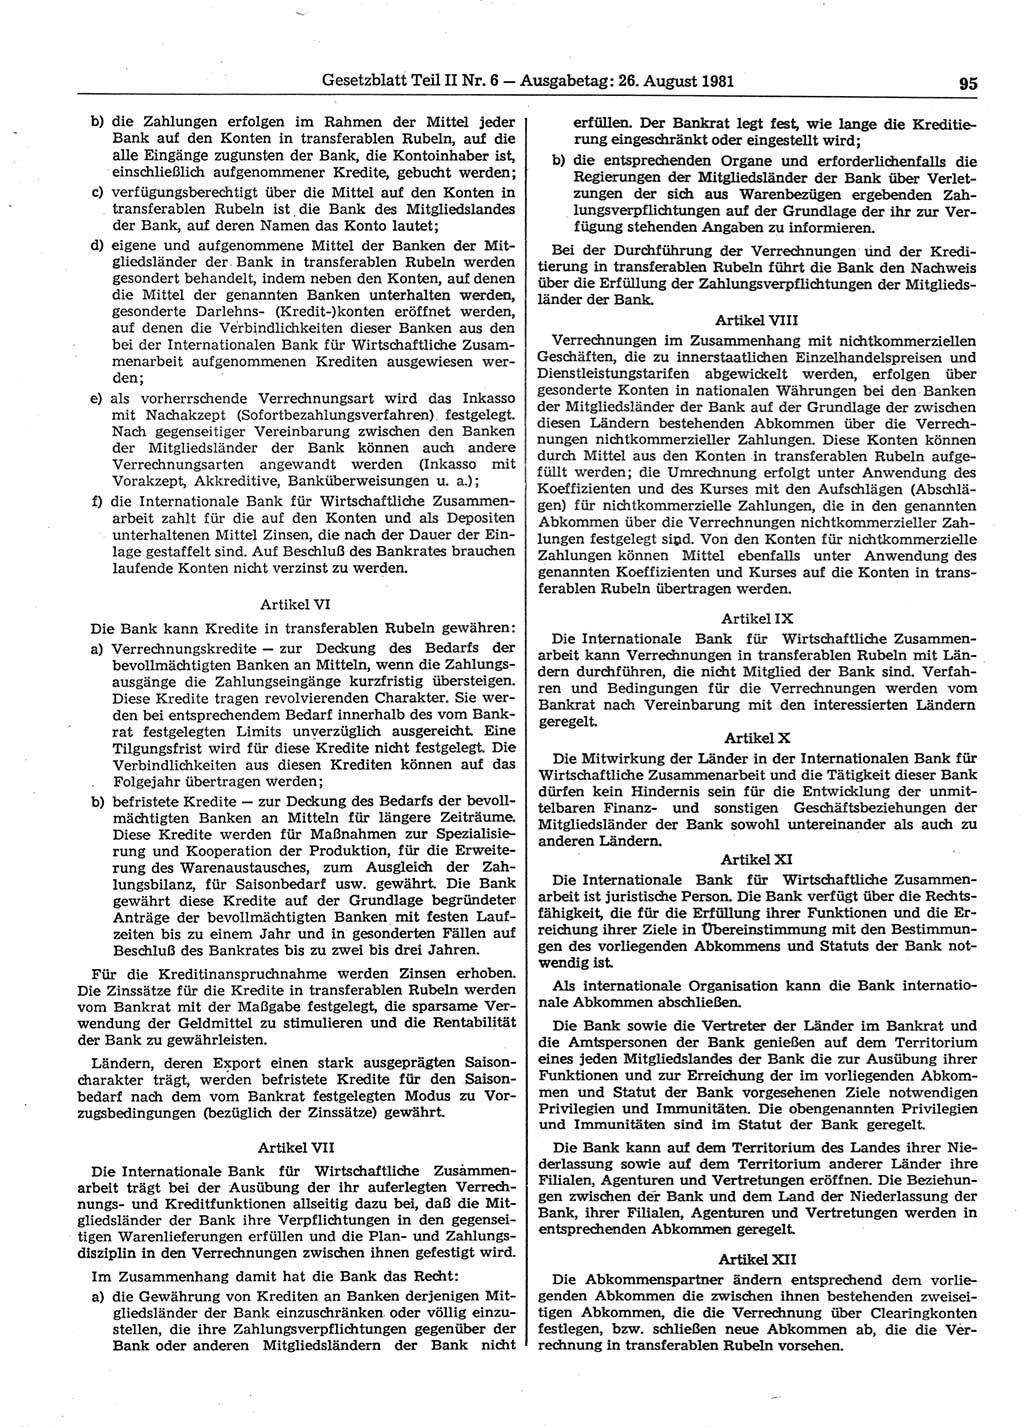 Gesetzblatt (GBl.) der Deutschen Demokratischen Republik (DDR) Teil ⅠⅠ 1981, Seite 95 (GBl. DDR ⅠⅠ 1981, S. 95)